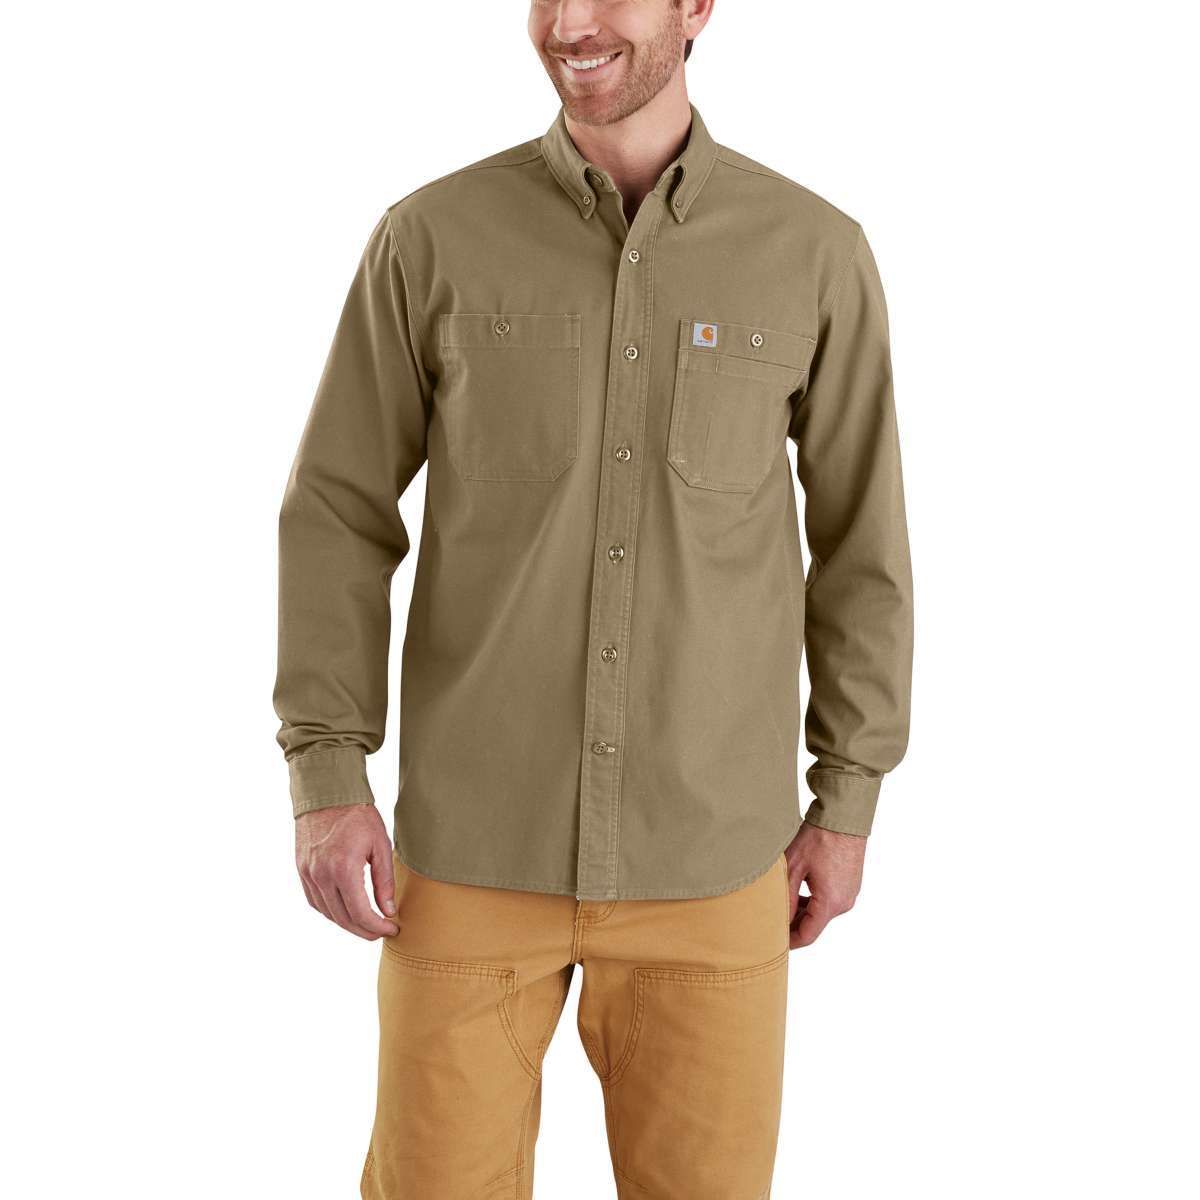 Carhartt Men's Rugged Flex Rigby Long-Sleeve Work Shirt - Brown, XL